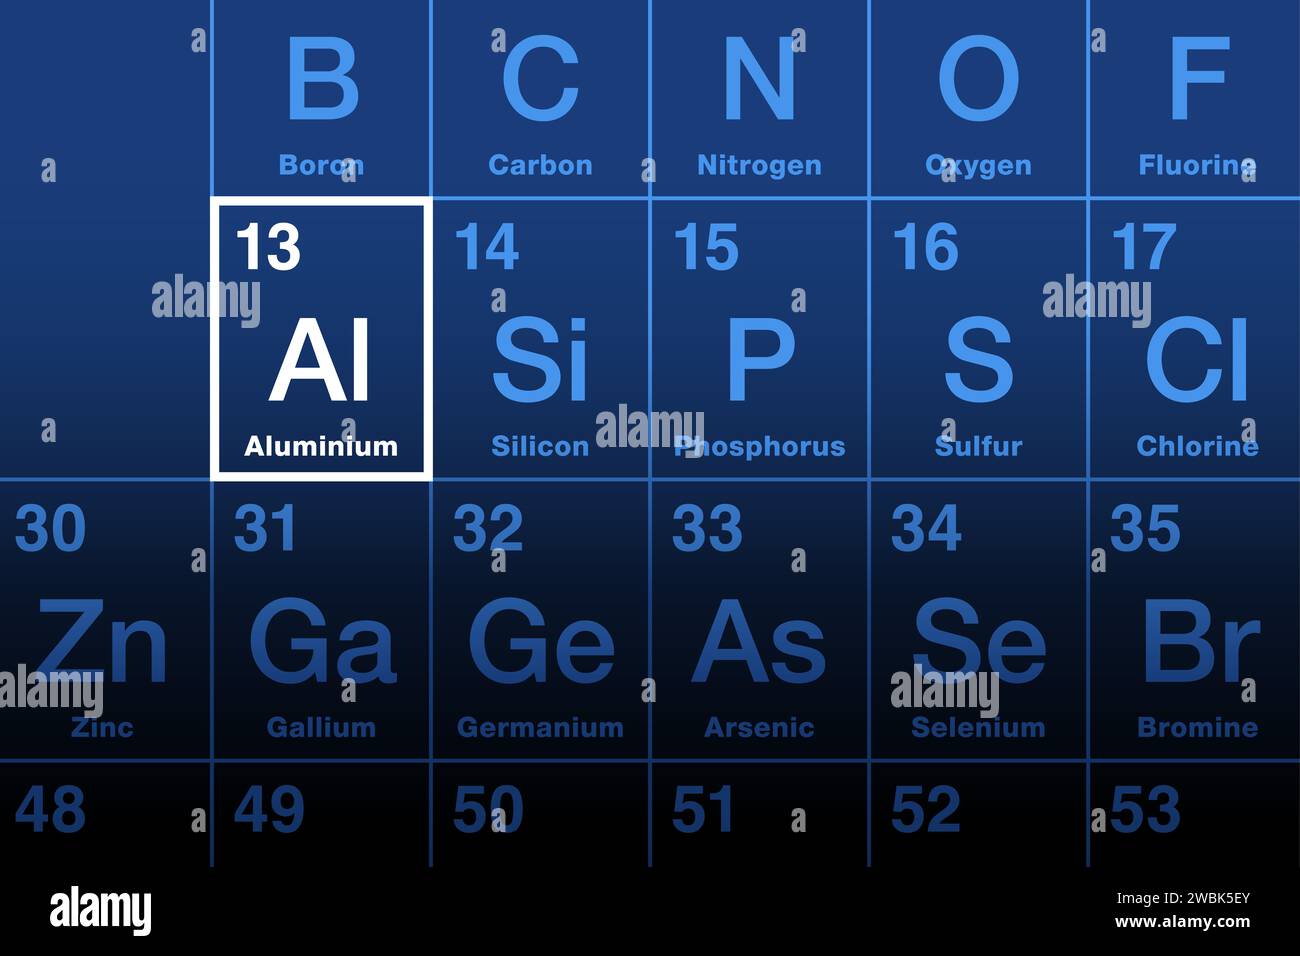 Elemento in alluminio sulla tavola periodica. Elemento chimico e metallo con simbolo al e numero atomico 13. Foto Stock